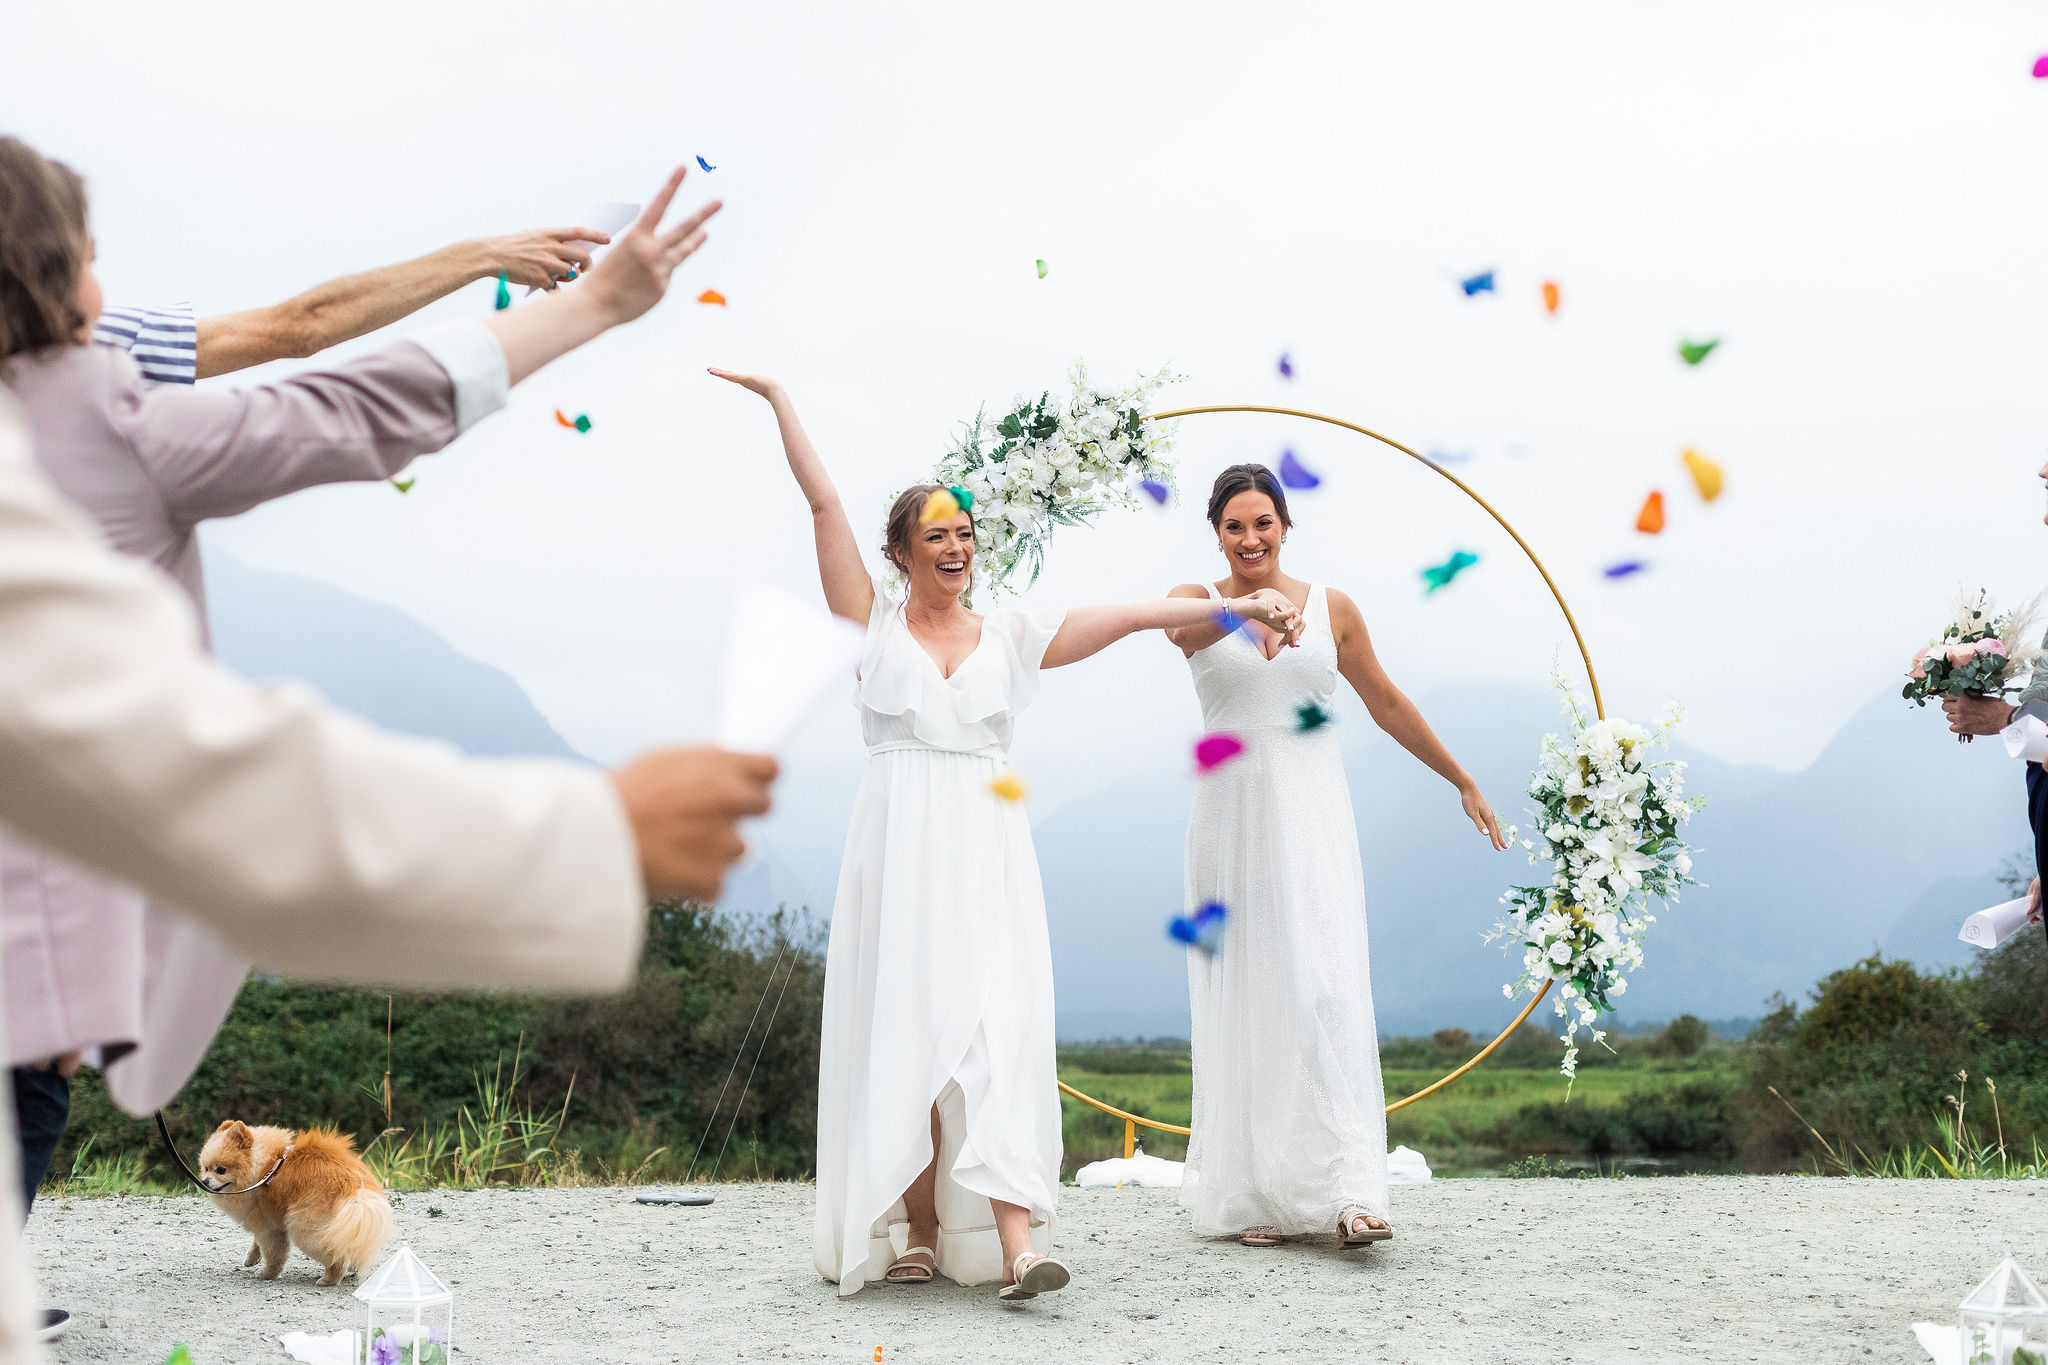 confetti as fun idea for your wedding ceremony